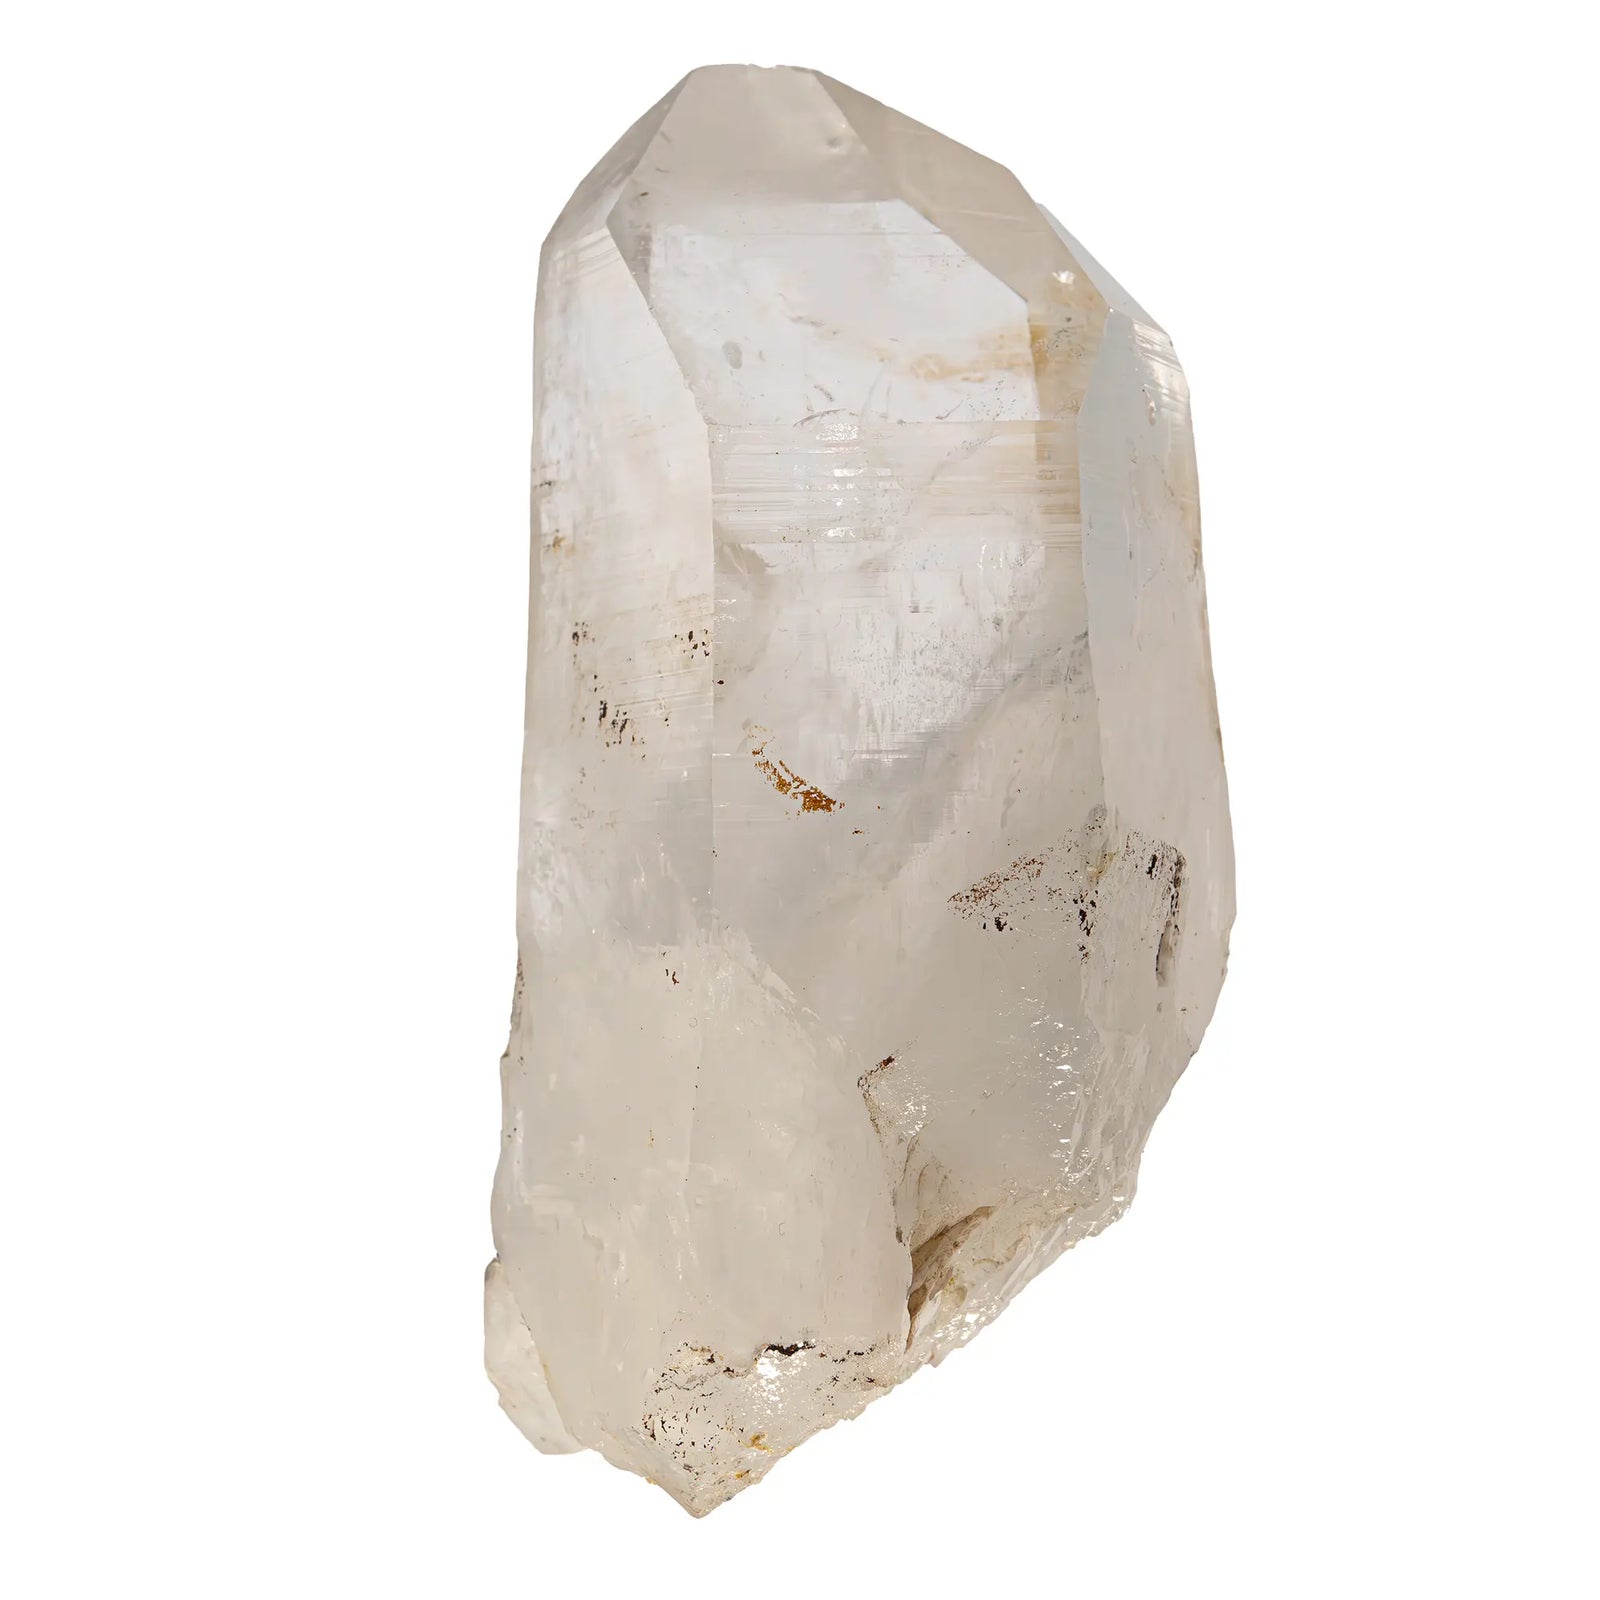 Cristal de roche - grand cristal brut - 1.34kg - CRISTAL SOURCES